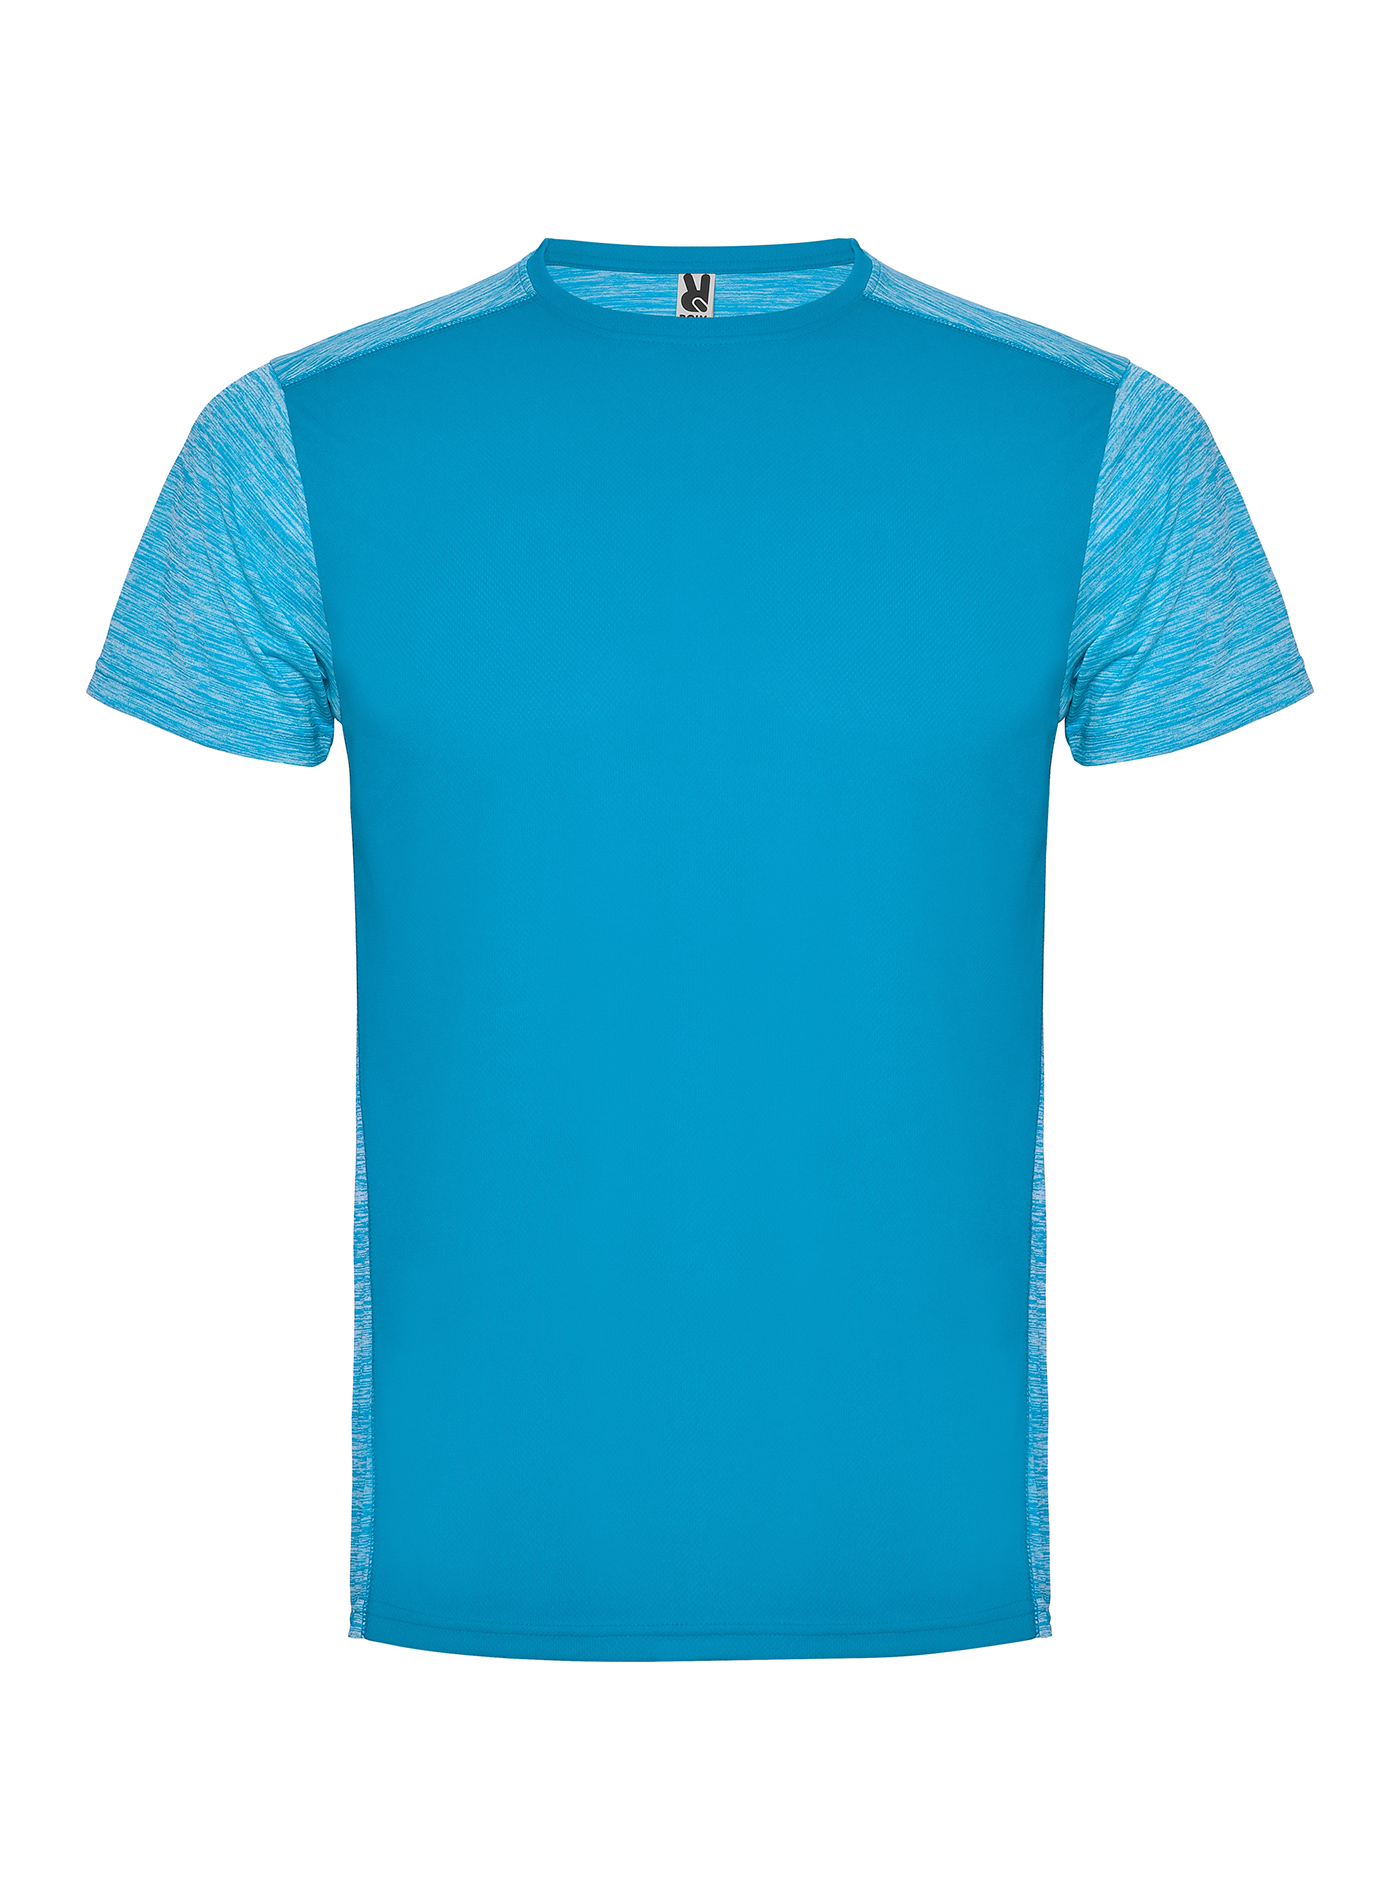 Pánské/Dětské sportovní tričko Roly Zolder - Antique Blue/Dusty Blue S